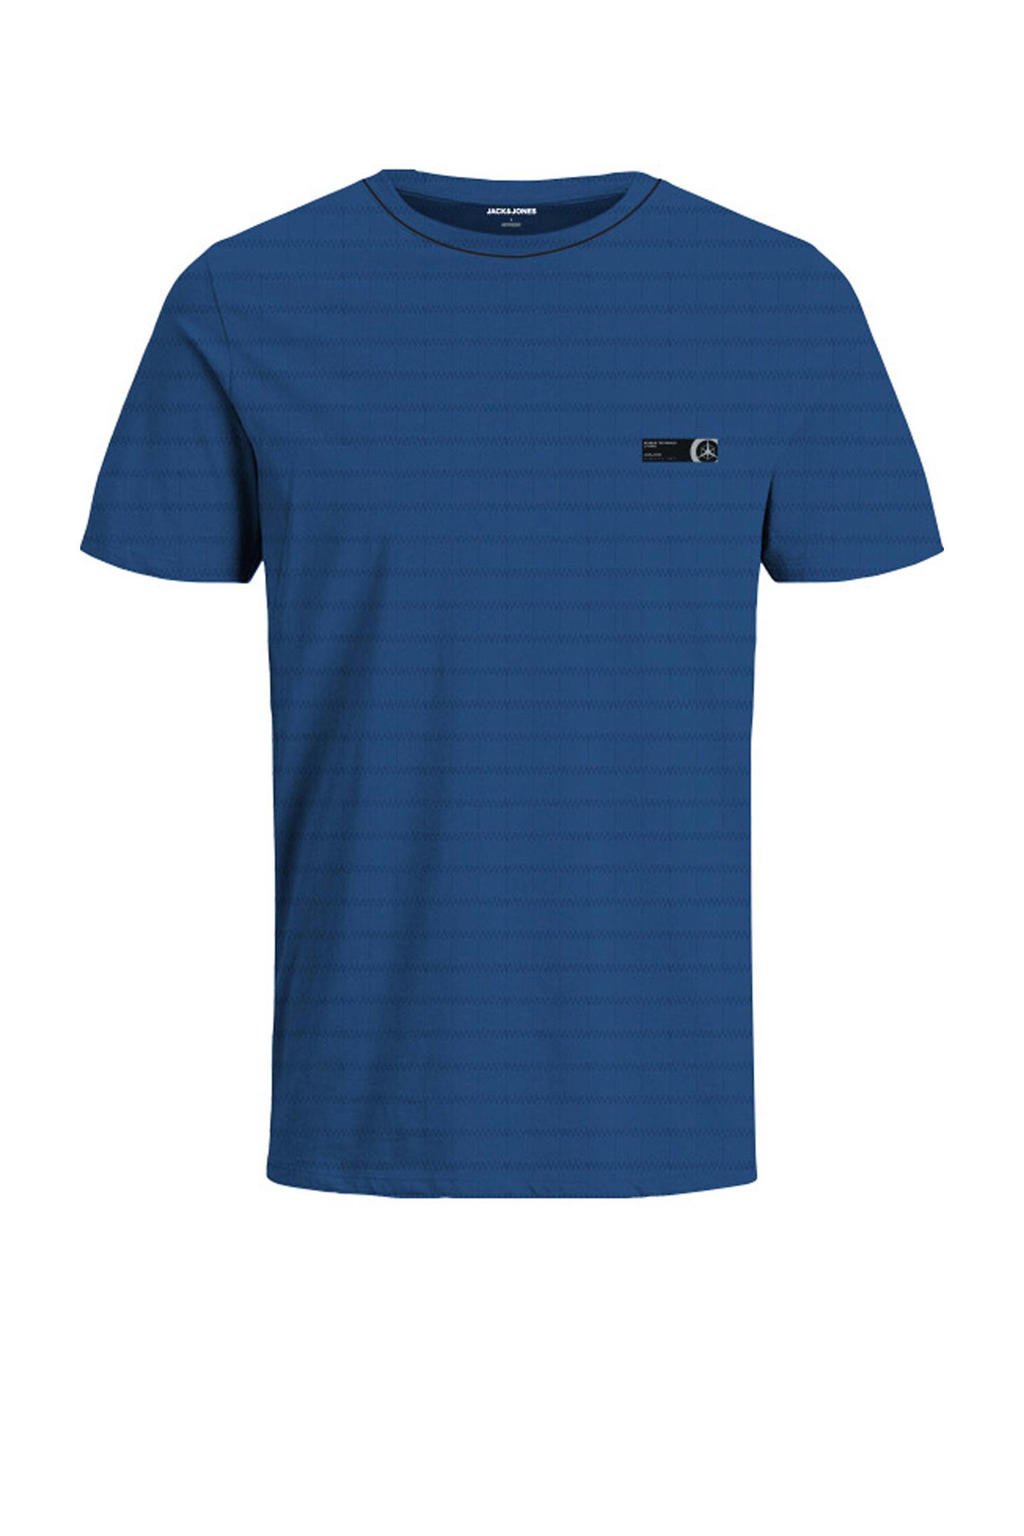 Blauwe jongens JACK & JONES JUNIOR T-shirt van sweat materiaal met logo dessin, korte mouwen en ronde hals